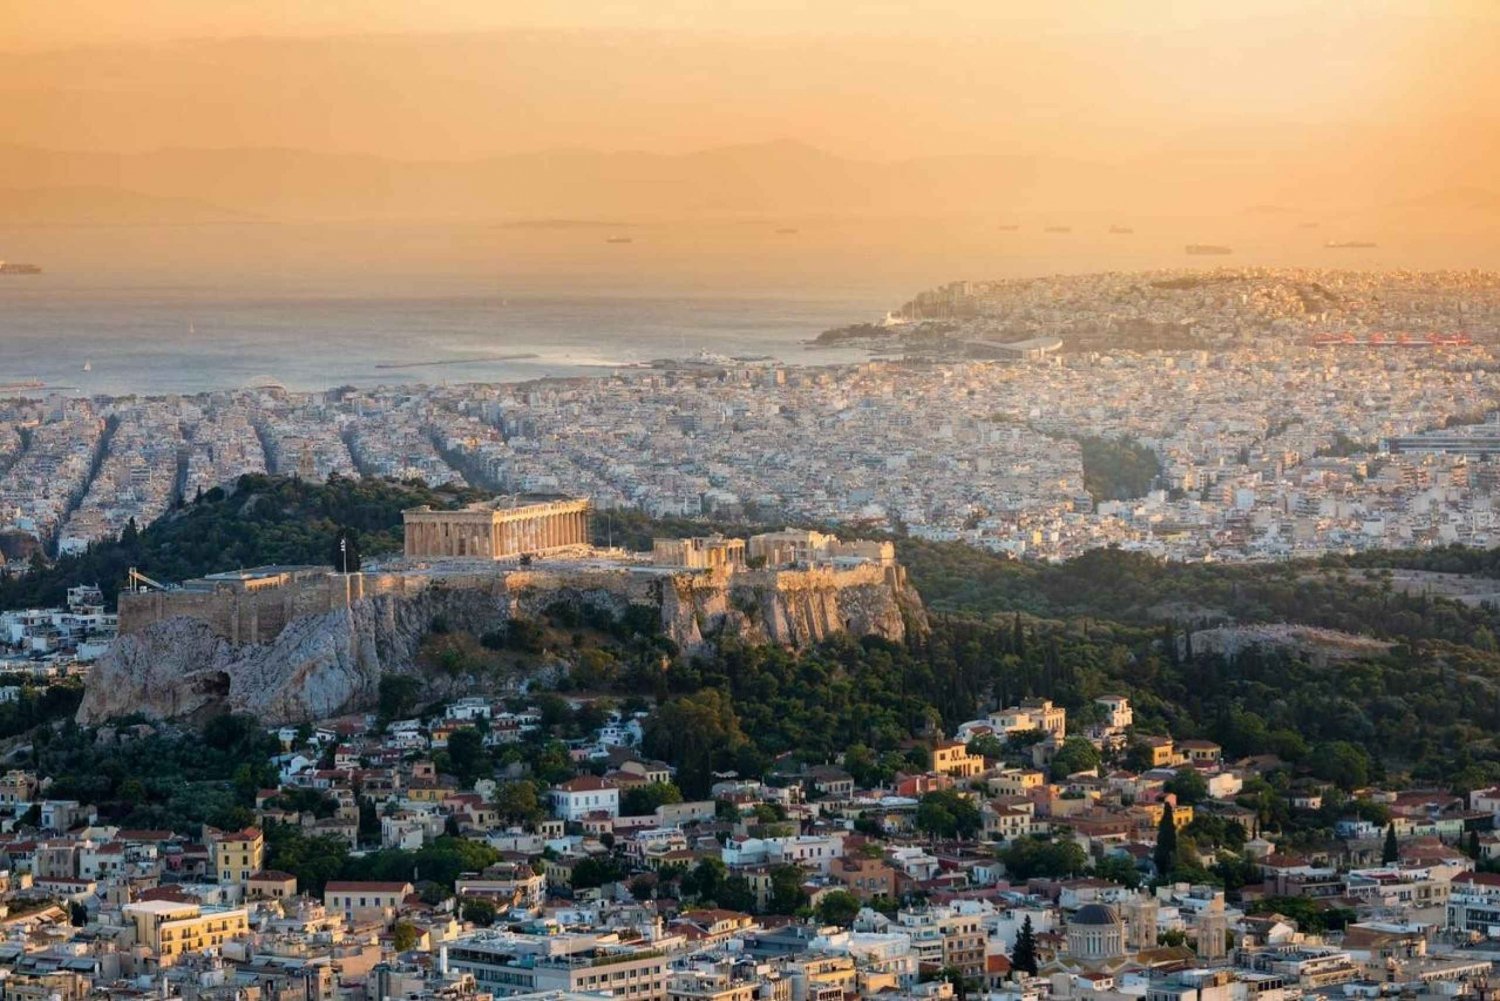 Athen: Akropolis guidet tur på spansk uten billetter